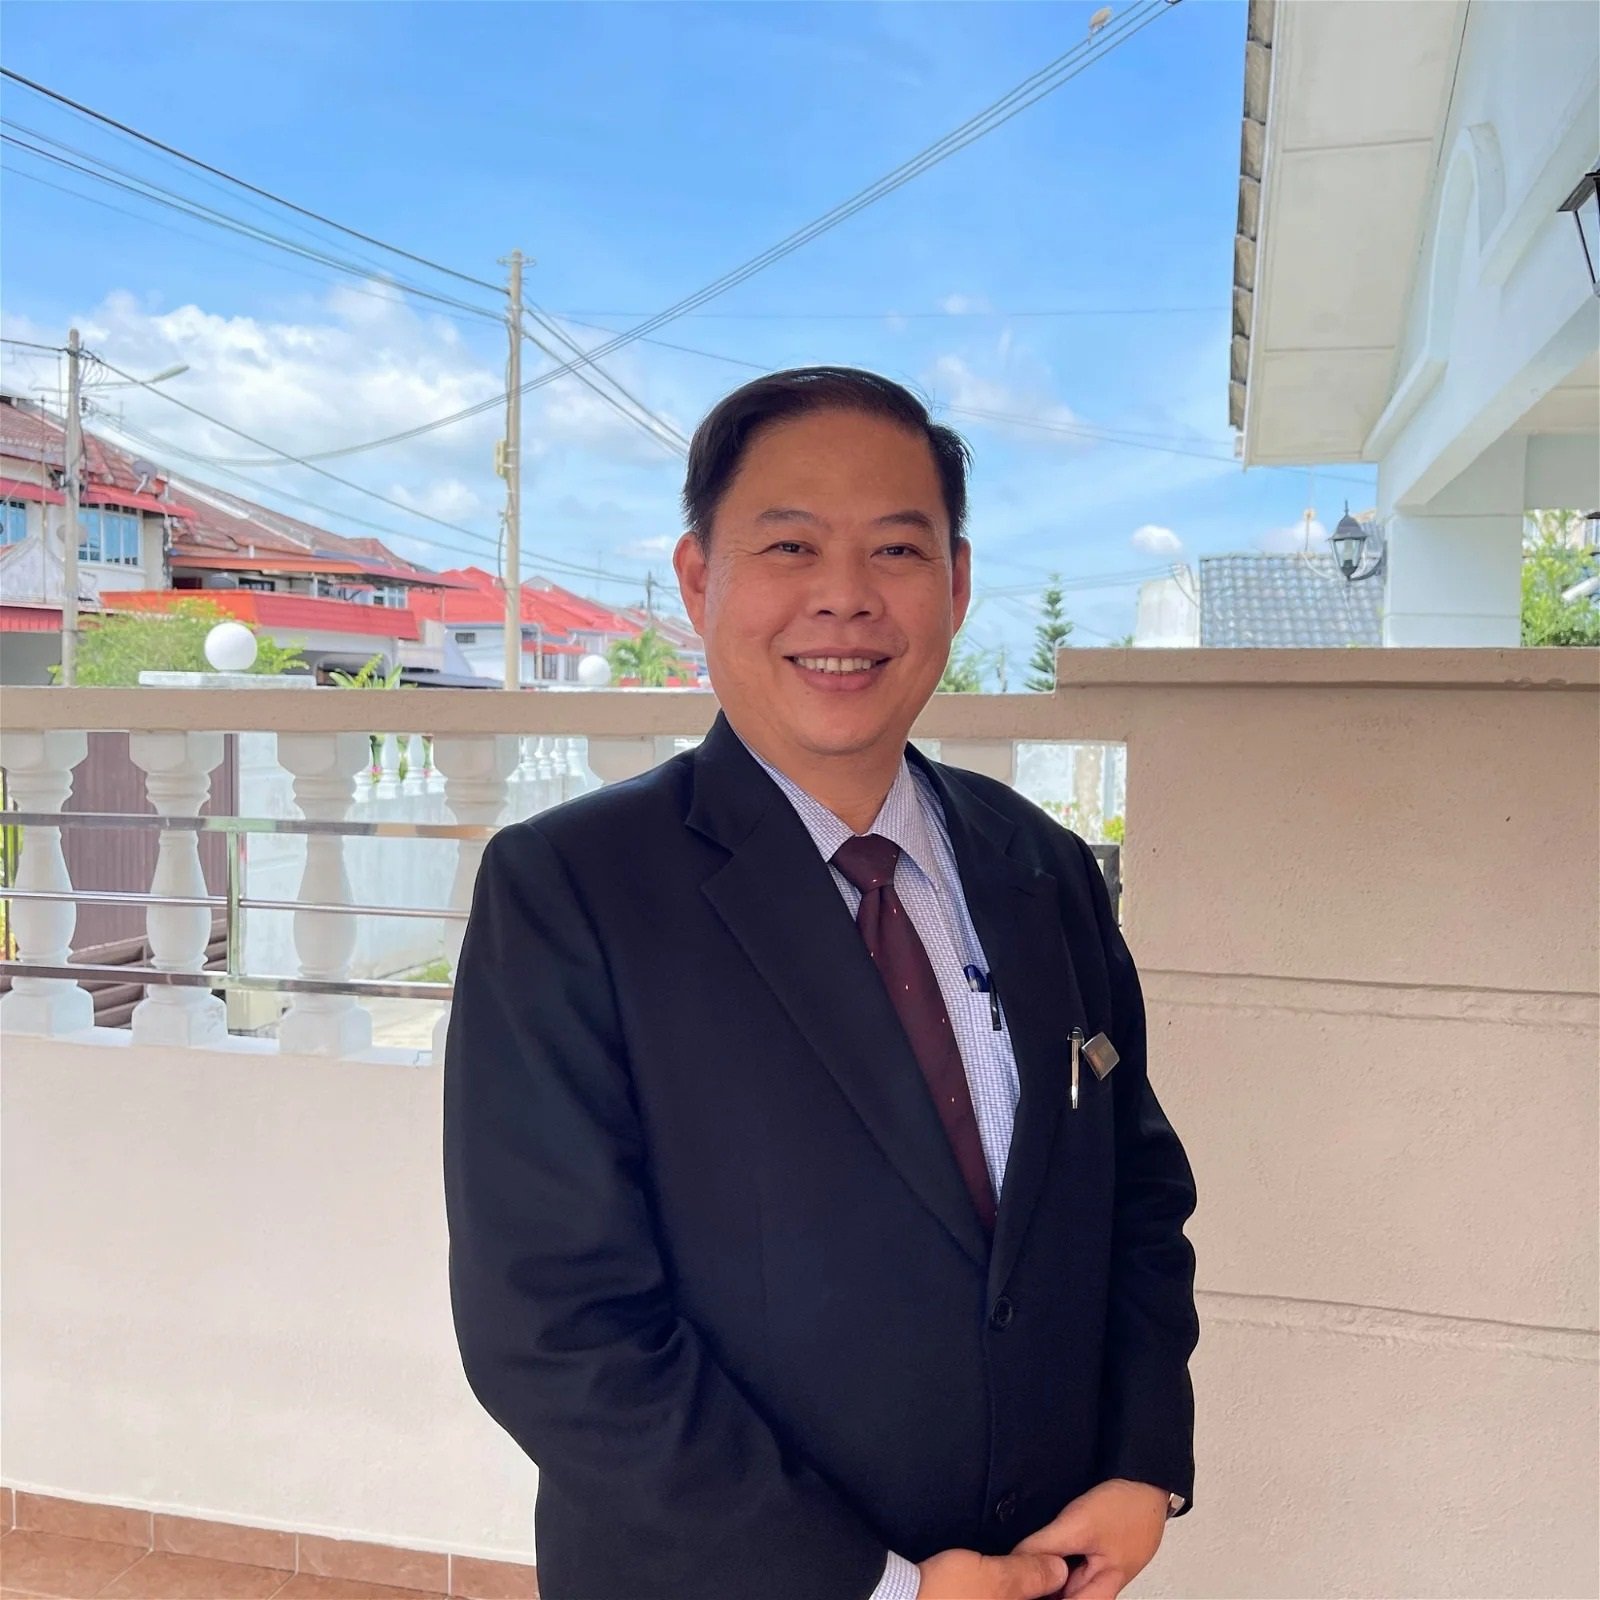 马华峇株巴辖市议员党鞭戴华光。